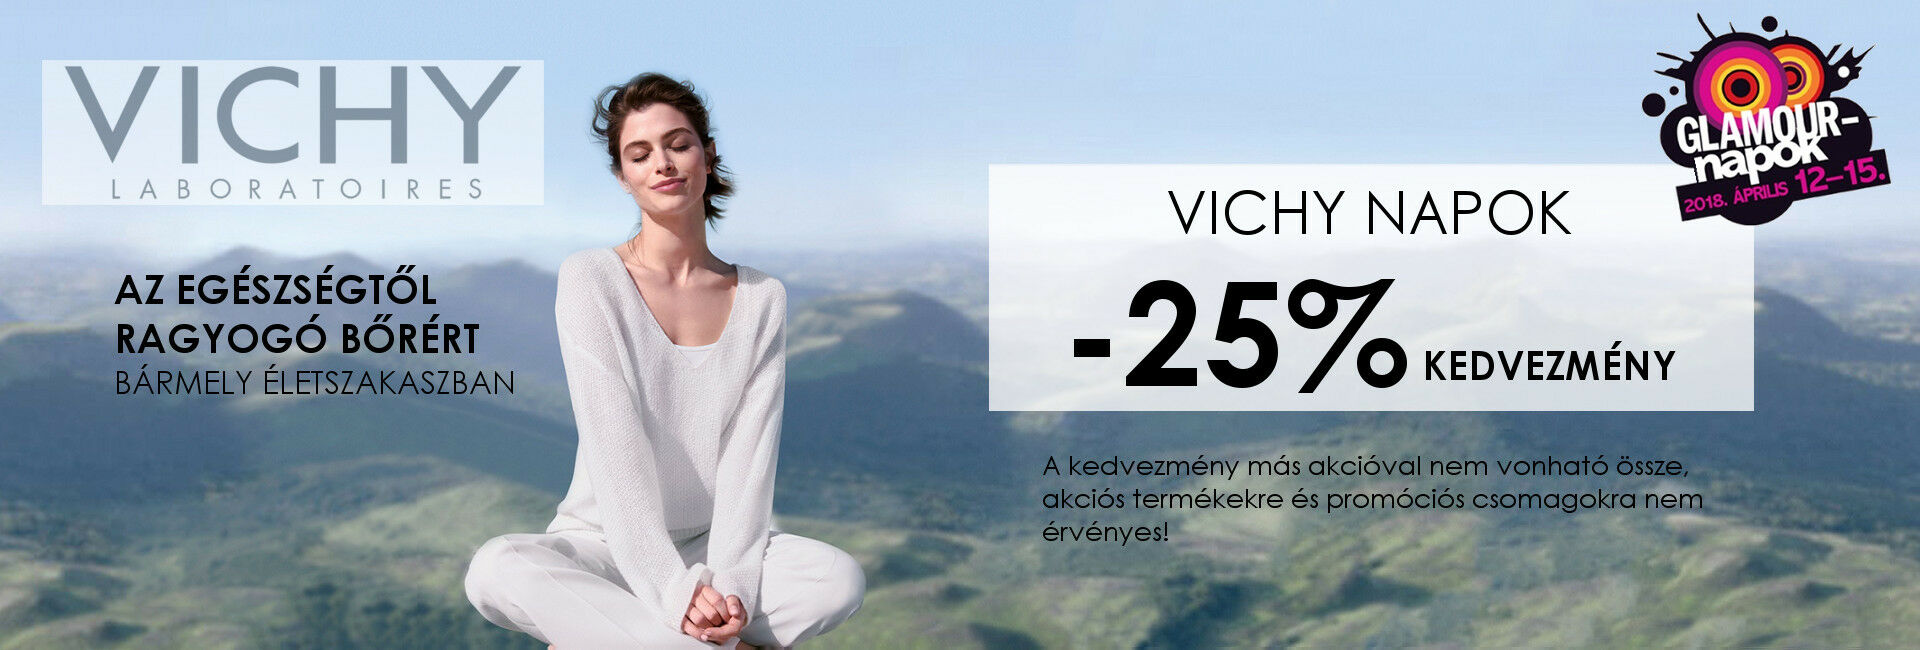 2018. április 12-15. között minden Vichy terméket 25% kedvezménnyel kínálunk!